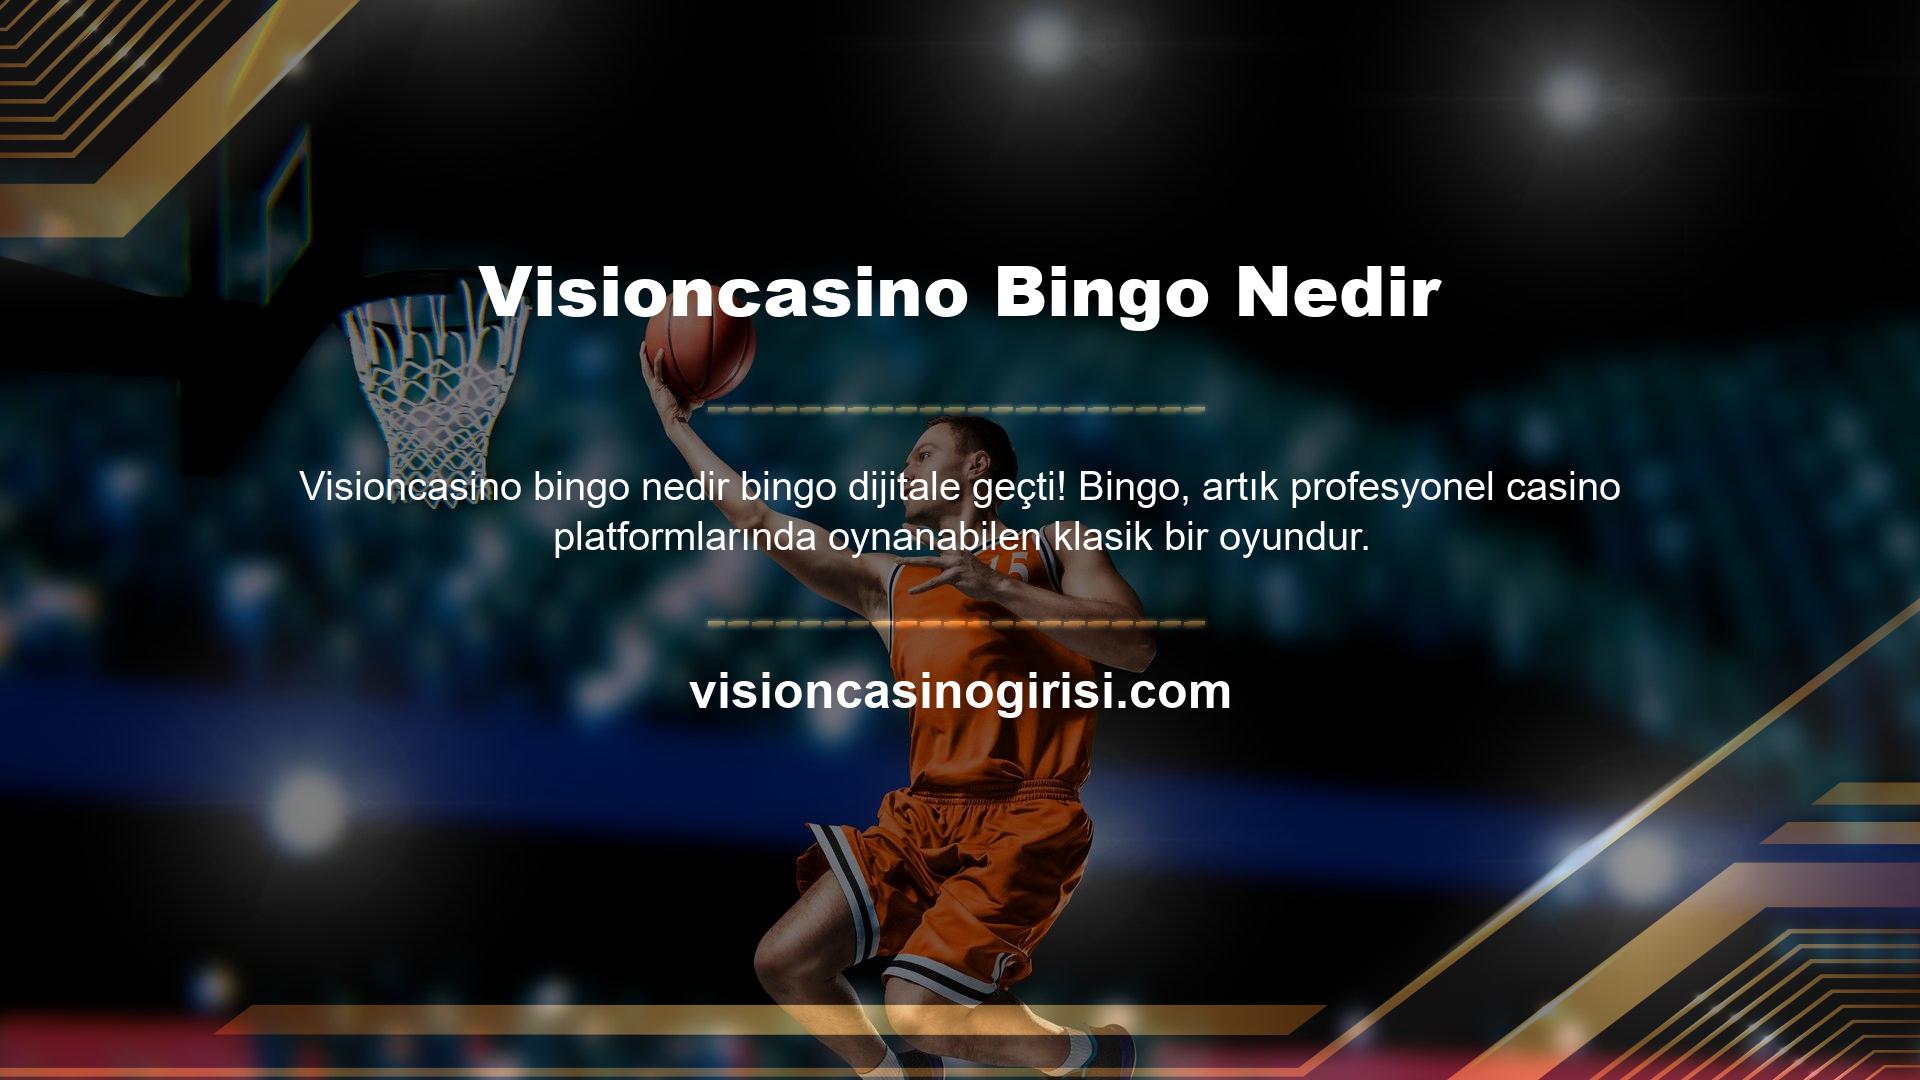 Visioncasino Bingo, okulun temel direklerinden biridir ve gerçek casino heyecanı sağlar